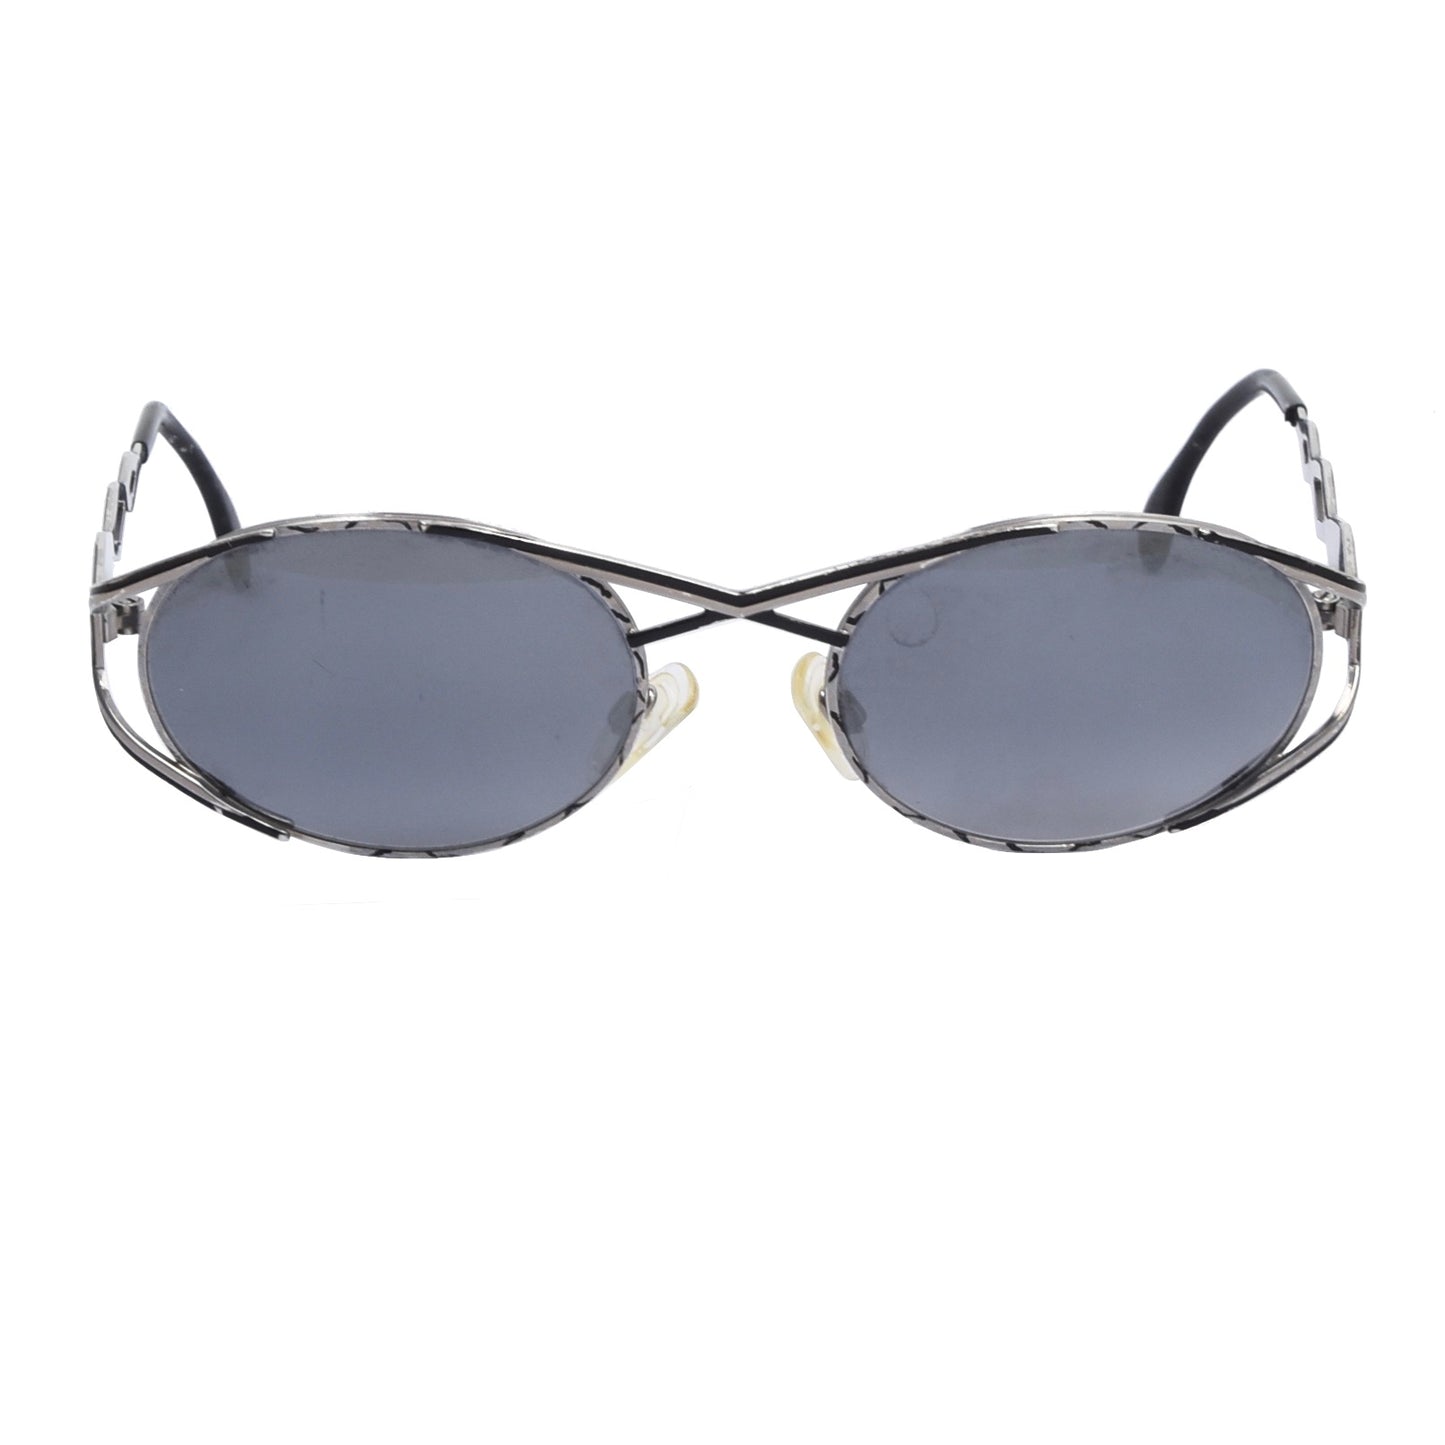 Cazal Mod 977 Col. 549 Sonnenbrille - Silber/Schwarz